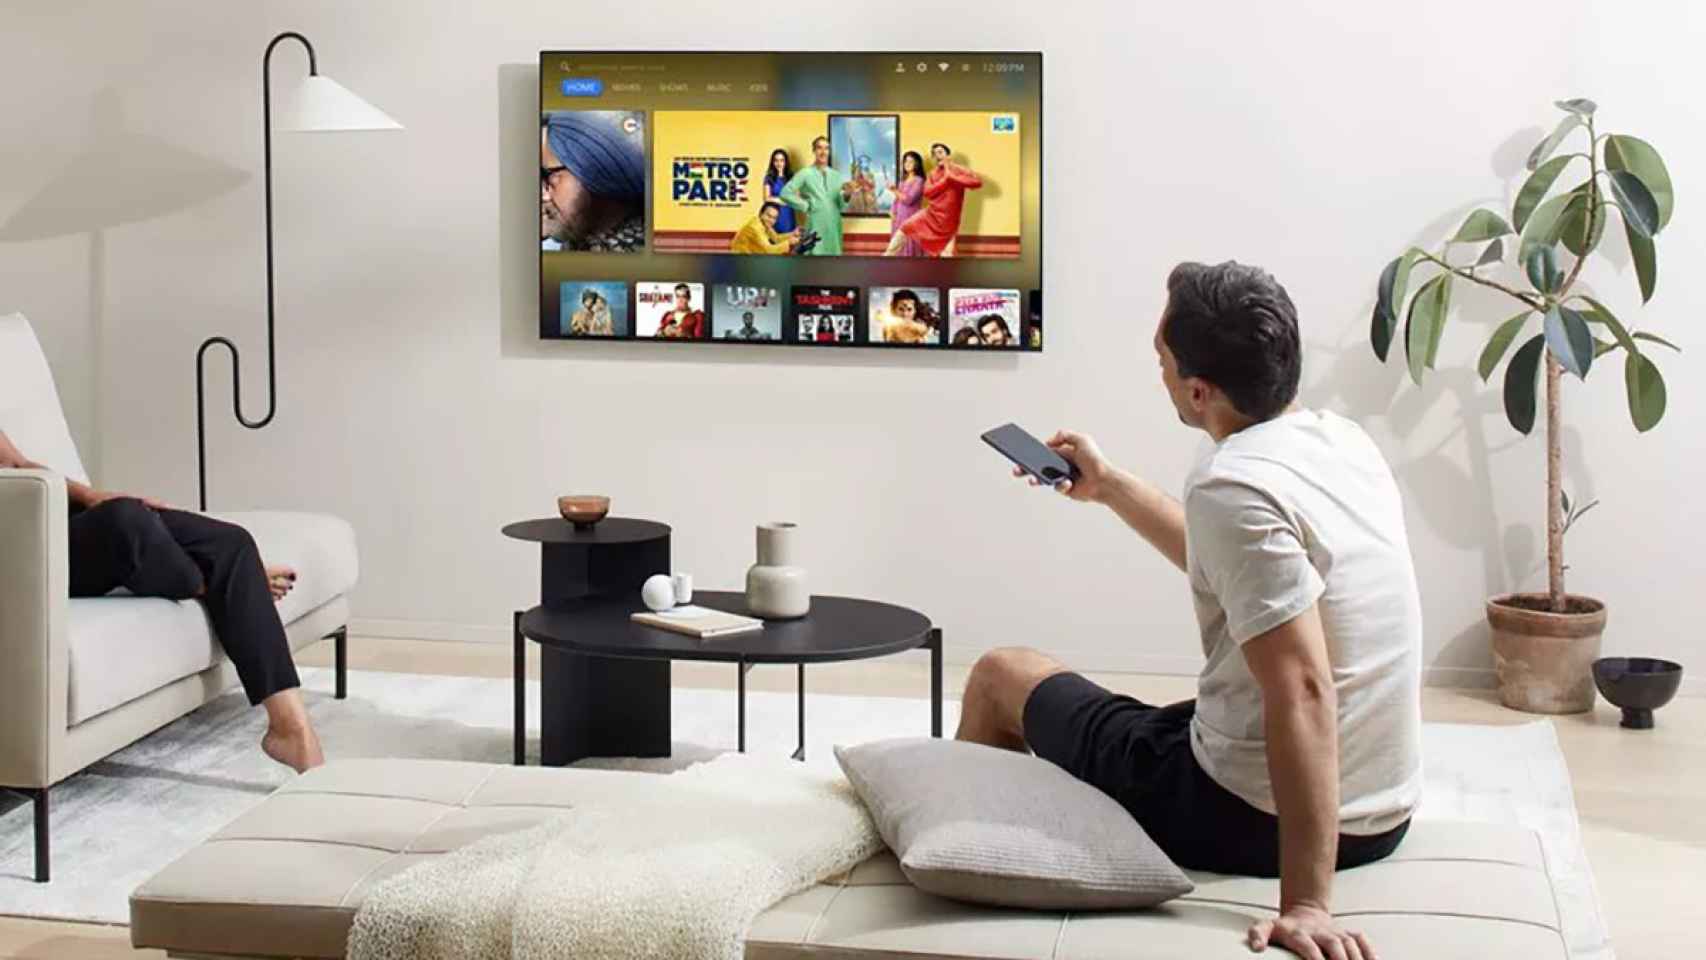 OnePlus asalta nuestro salón con su primera tele con Android TV